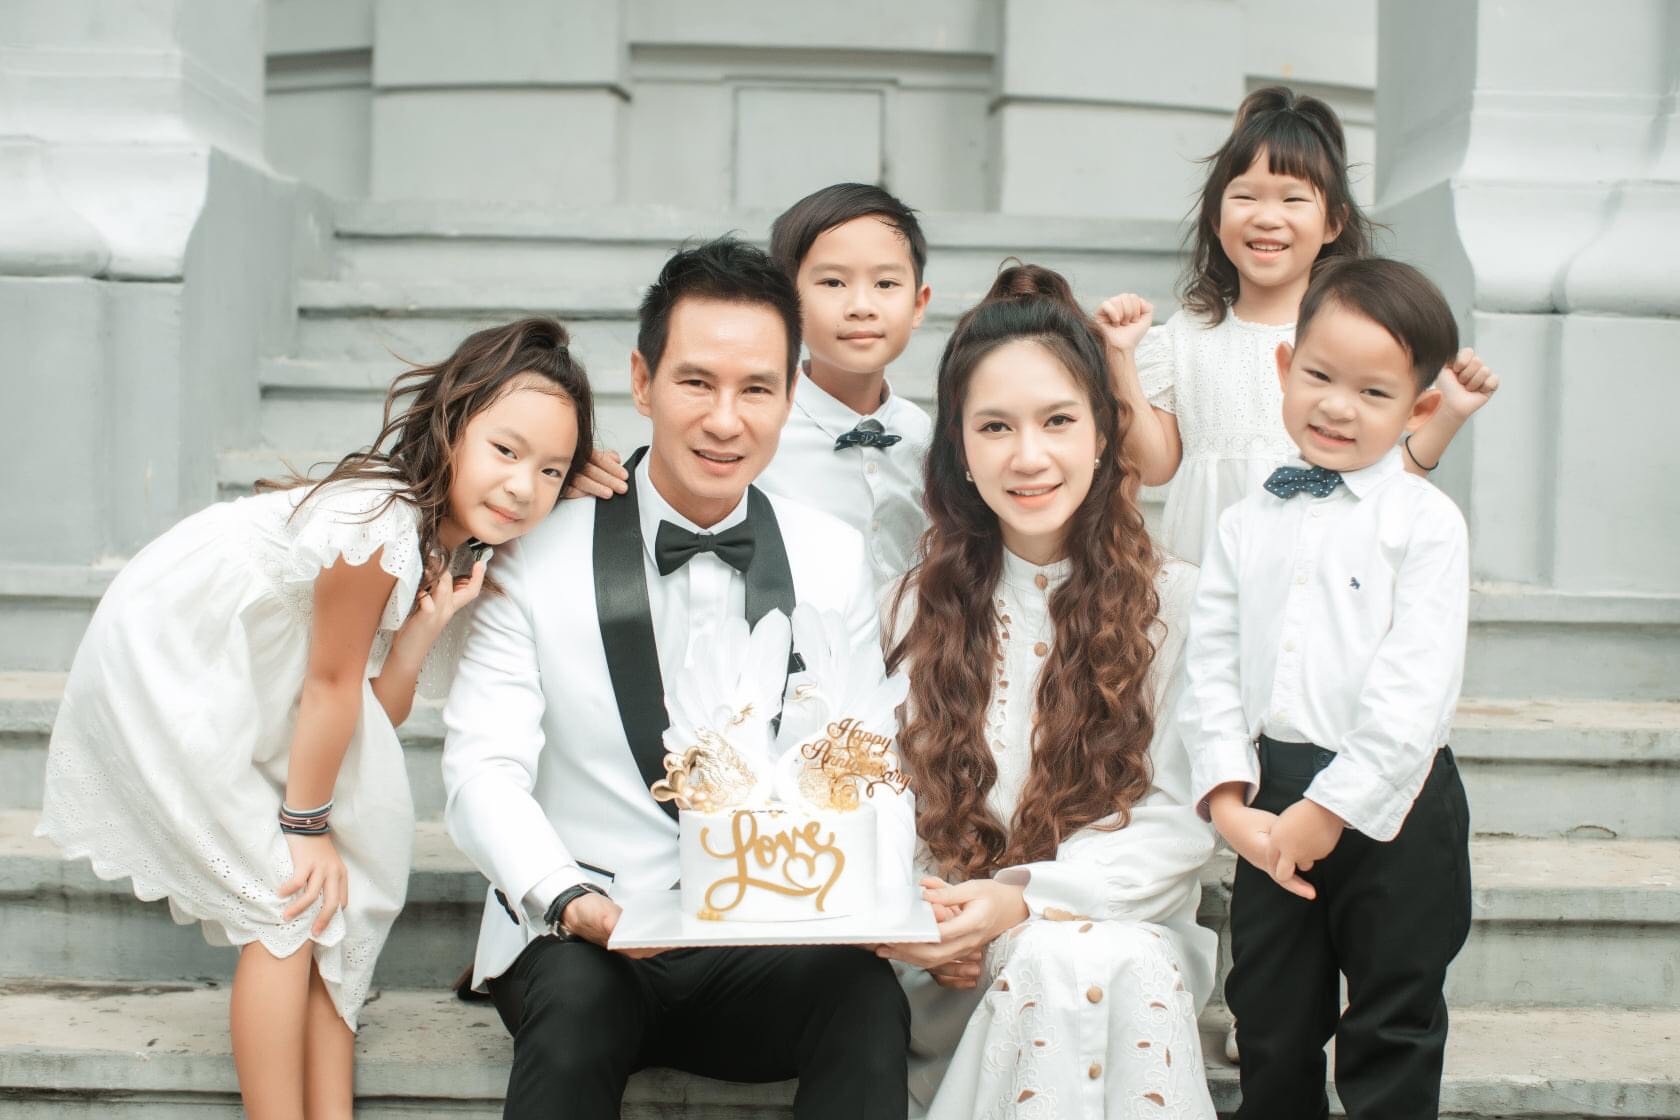 Lý Hải, Minh Hà tung ảnh cưới 12 năm trước: Nhan sắc gây 'bão' khiến fan trầm trồ - Ảnh 6